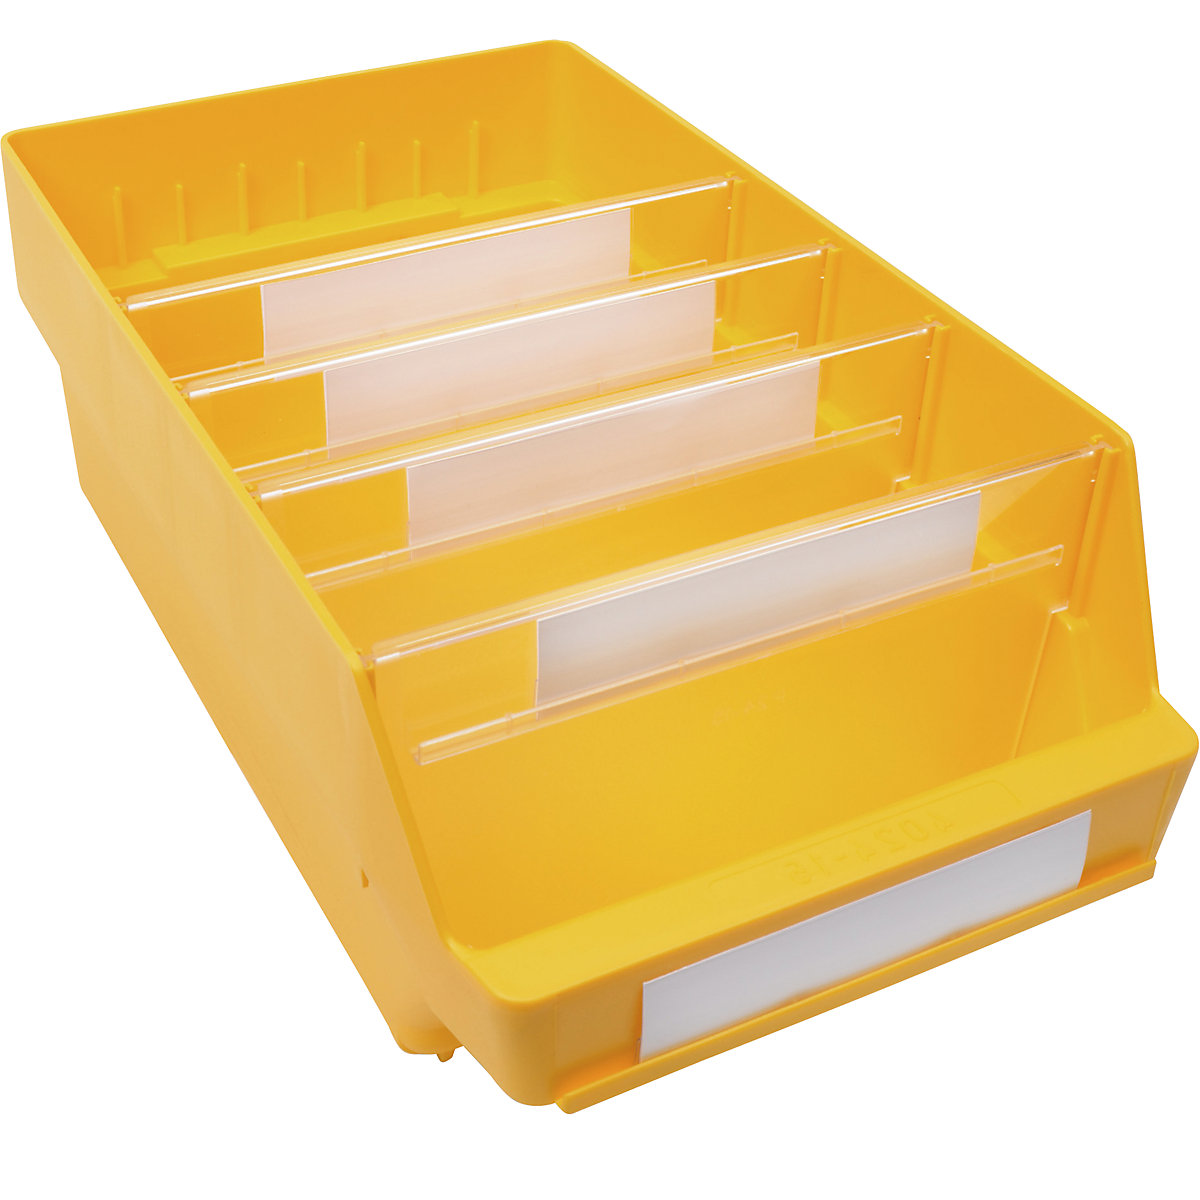 Cassettina per scaffali in polipropilene ad alta resistenza – STEMO, giallo, lungh. x largh. x alt. 400 x 240 x 150 mm, conf. da 10 pezzi-9